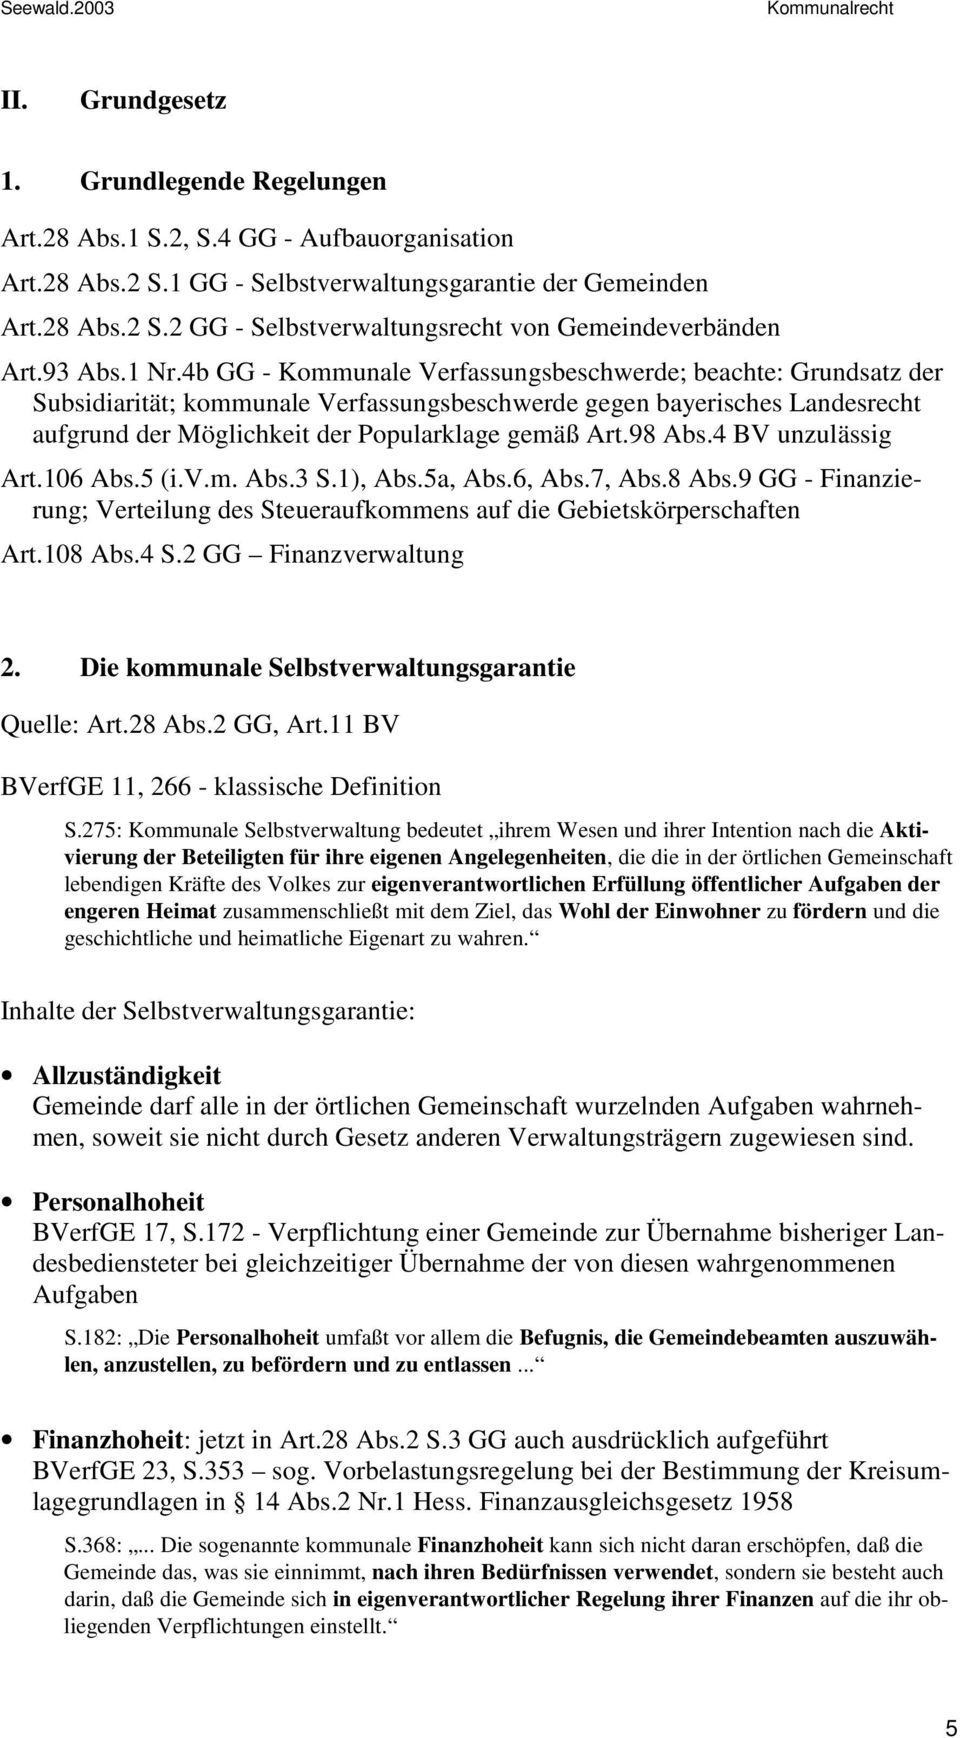 4b GG - Kommunale Verfassungsbeschwerde; beachte: Grundsatz der Subsidiarität; kommunale Verfassungsbeschwerde gegen bayerisches Landesrecht aufgrund der Möglichkeit der Popularklage gemäß Art.98 Abs.